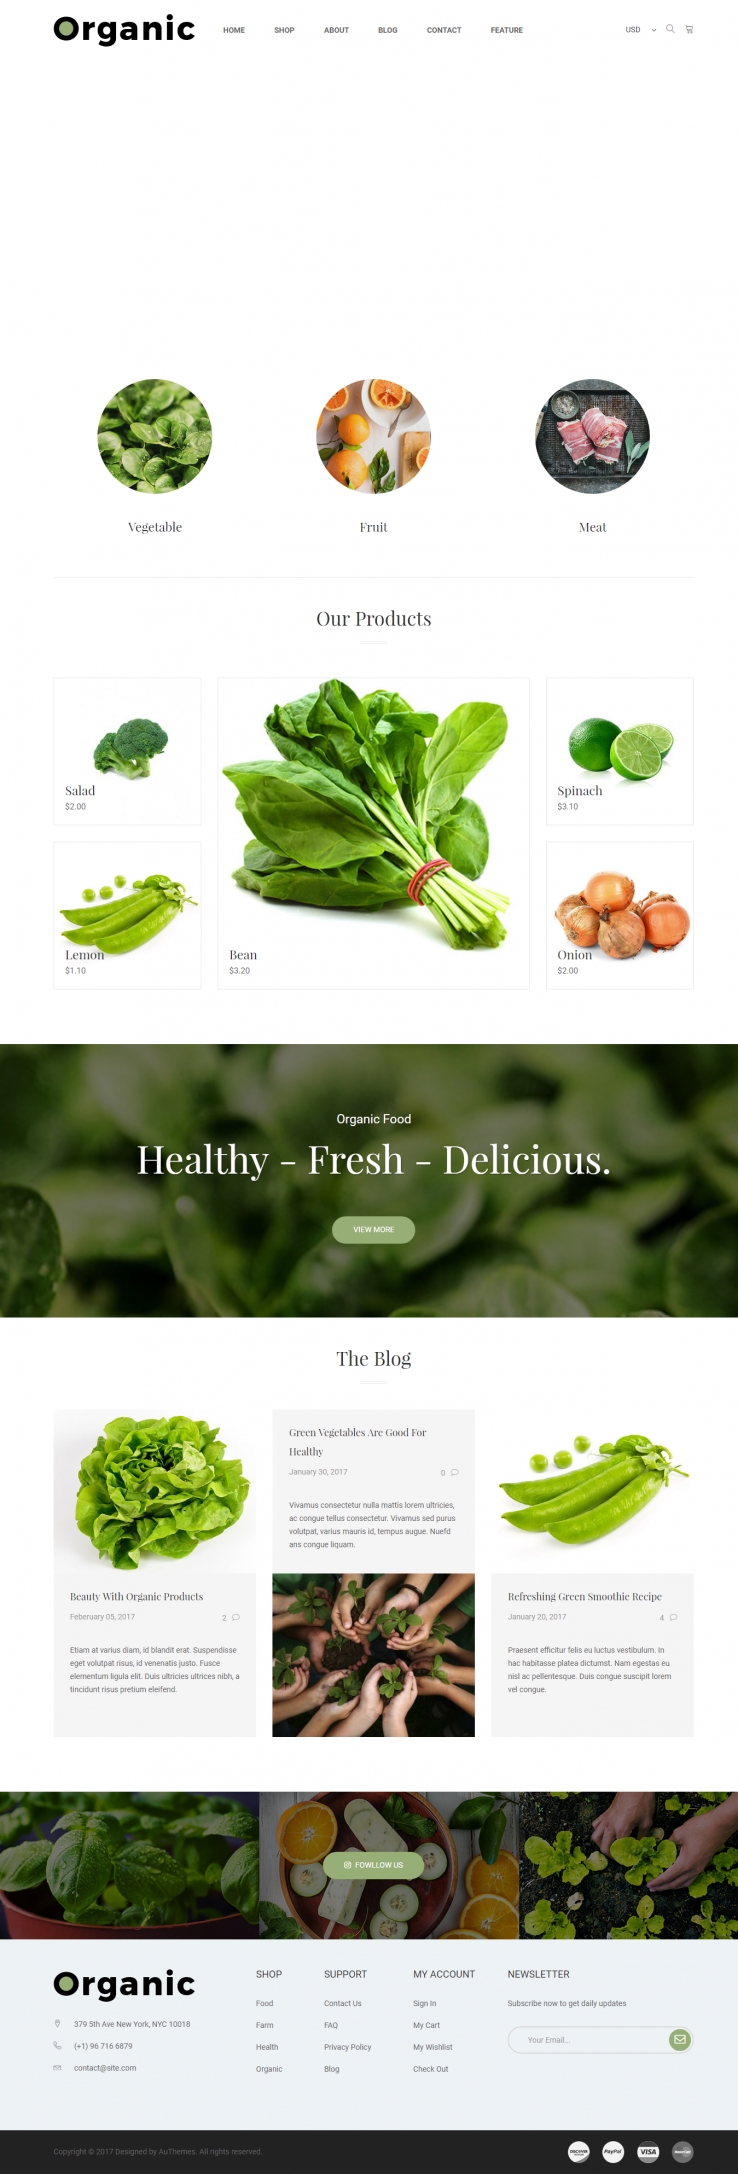 绿色欧美风格的蔬菜水果超市整站网站源码下载